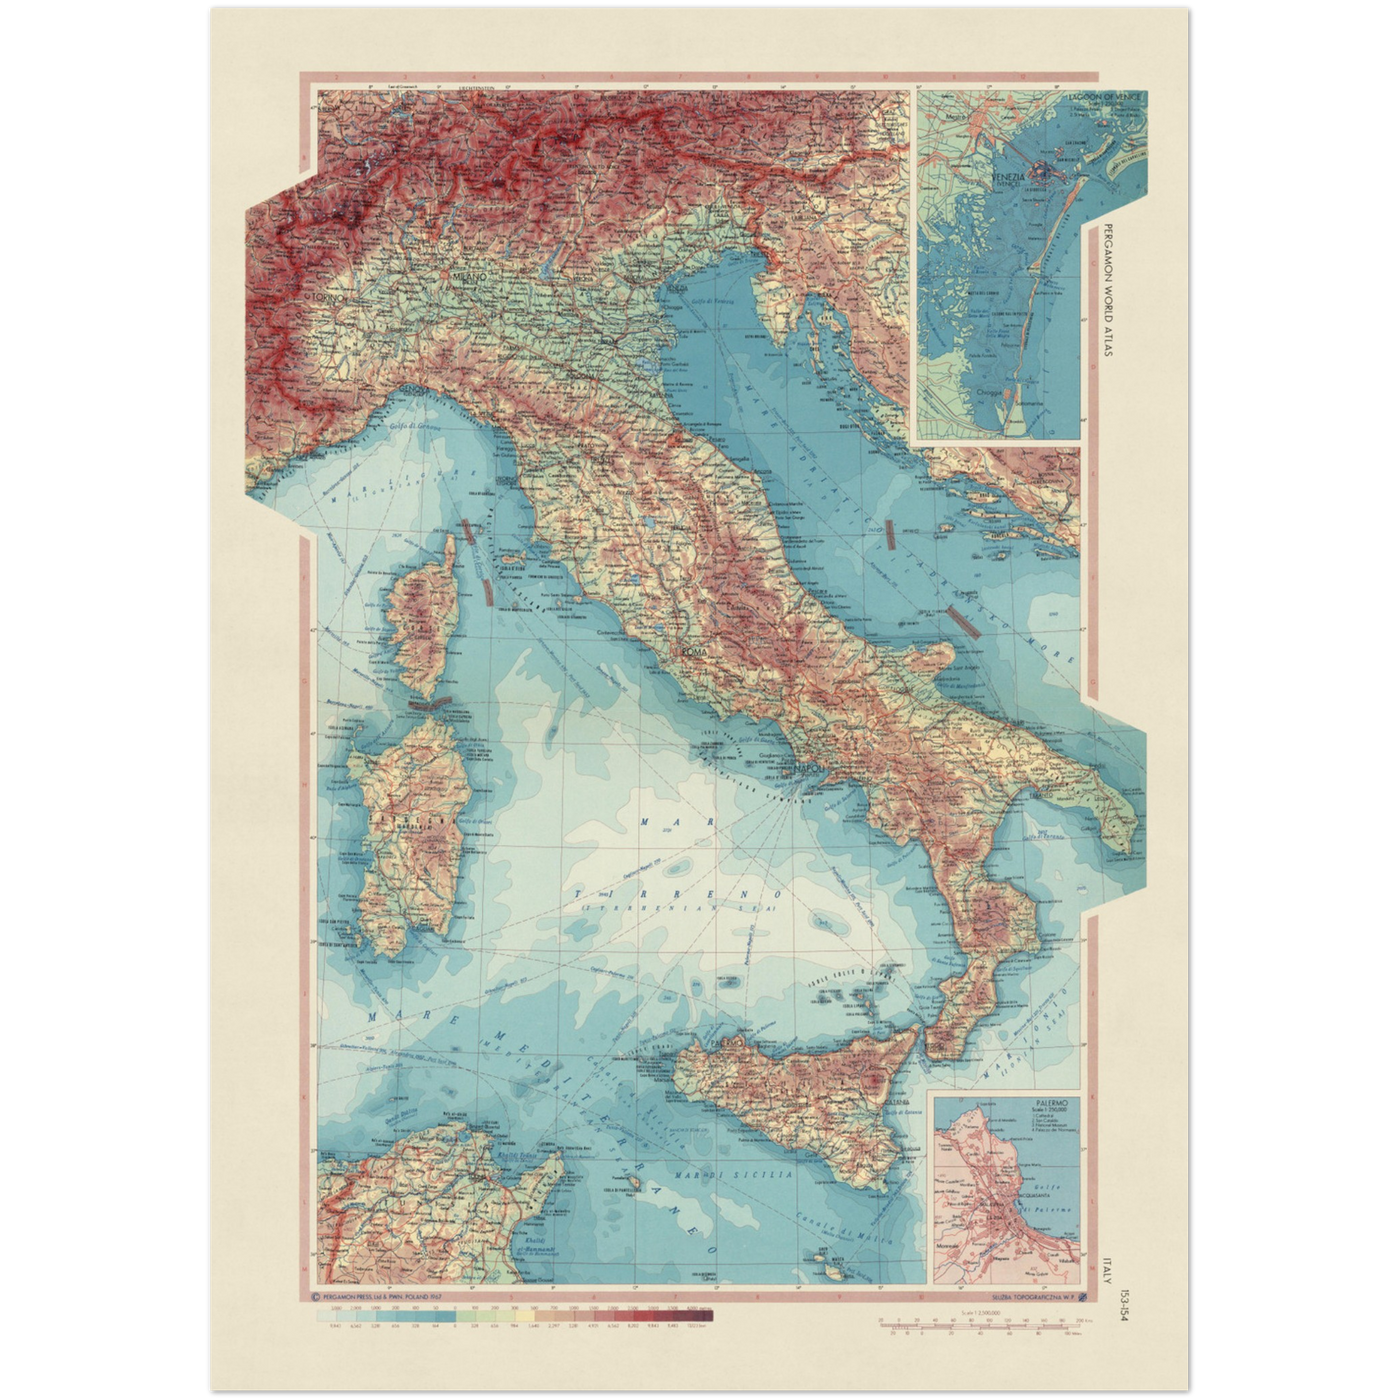 Alte Karte von Italien vom Topografischen Dienst der polnischen Armee, 1967: Korsika, Sardinien, Sizilien, Tyrrhenisches Meer, Adria